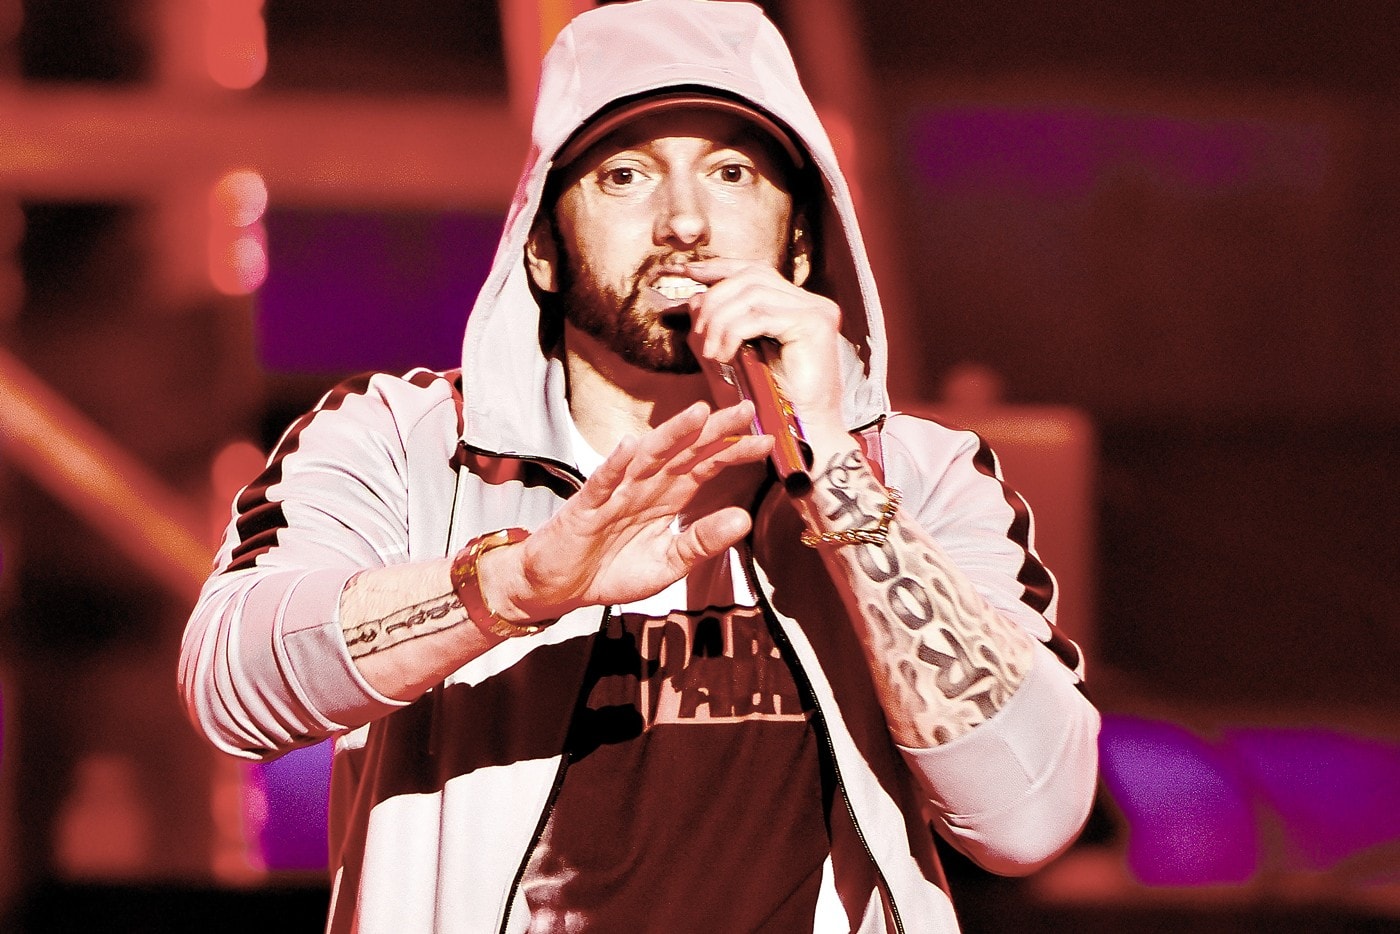 韋伯字典將 Eminem 經典曲目《Stan》一詞編入字典